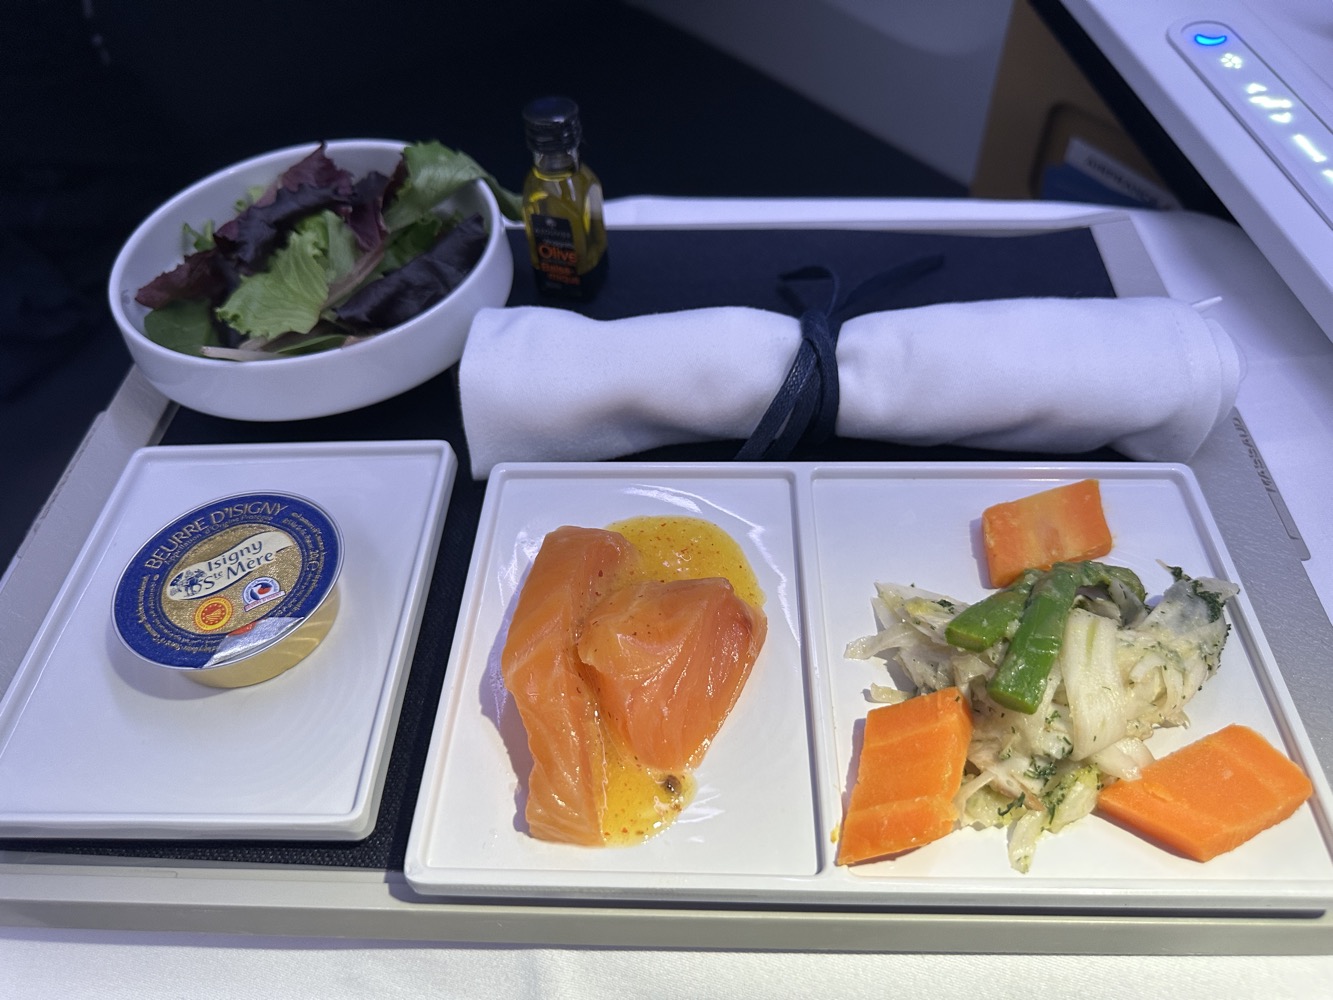 Air France Business Class dinner starter